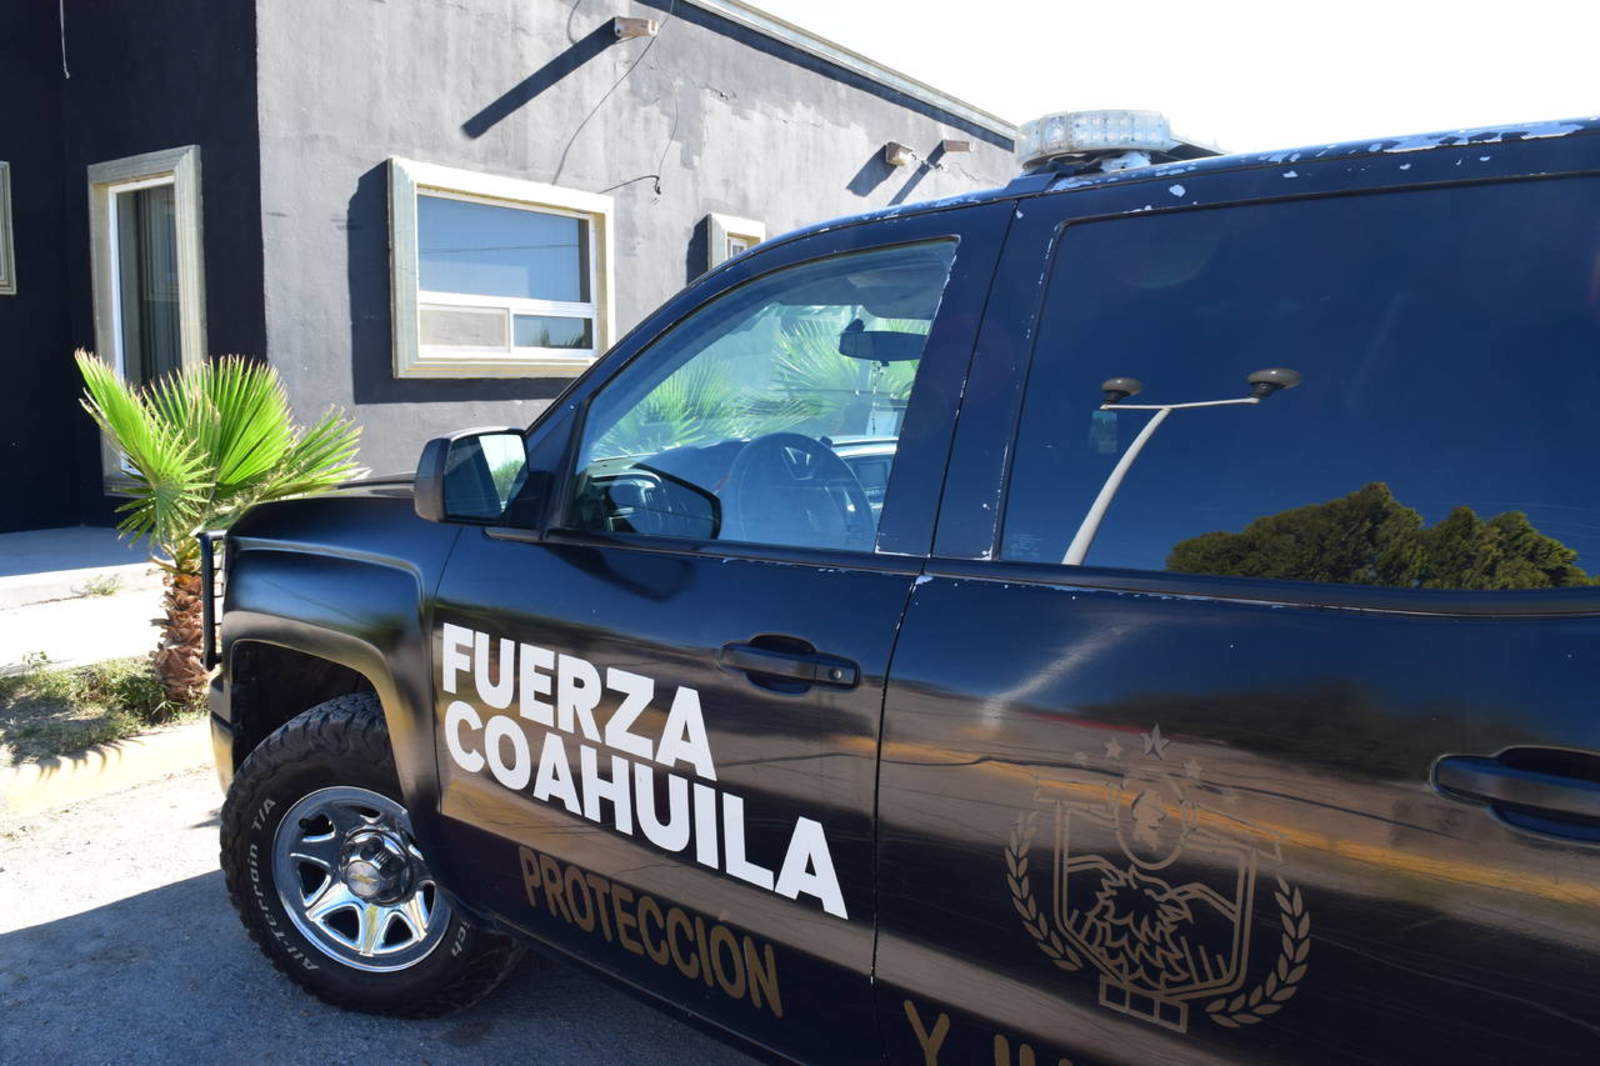 La corporación de Fuerza Coahuila encabeza la lista con 10 quejas durante el mes de noviembre. (ARCHIVO)